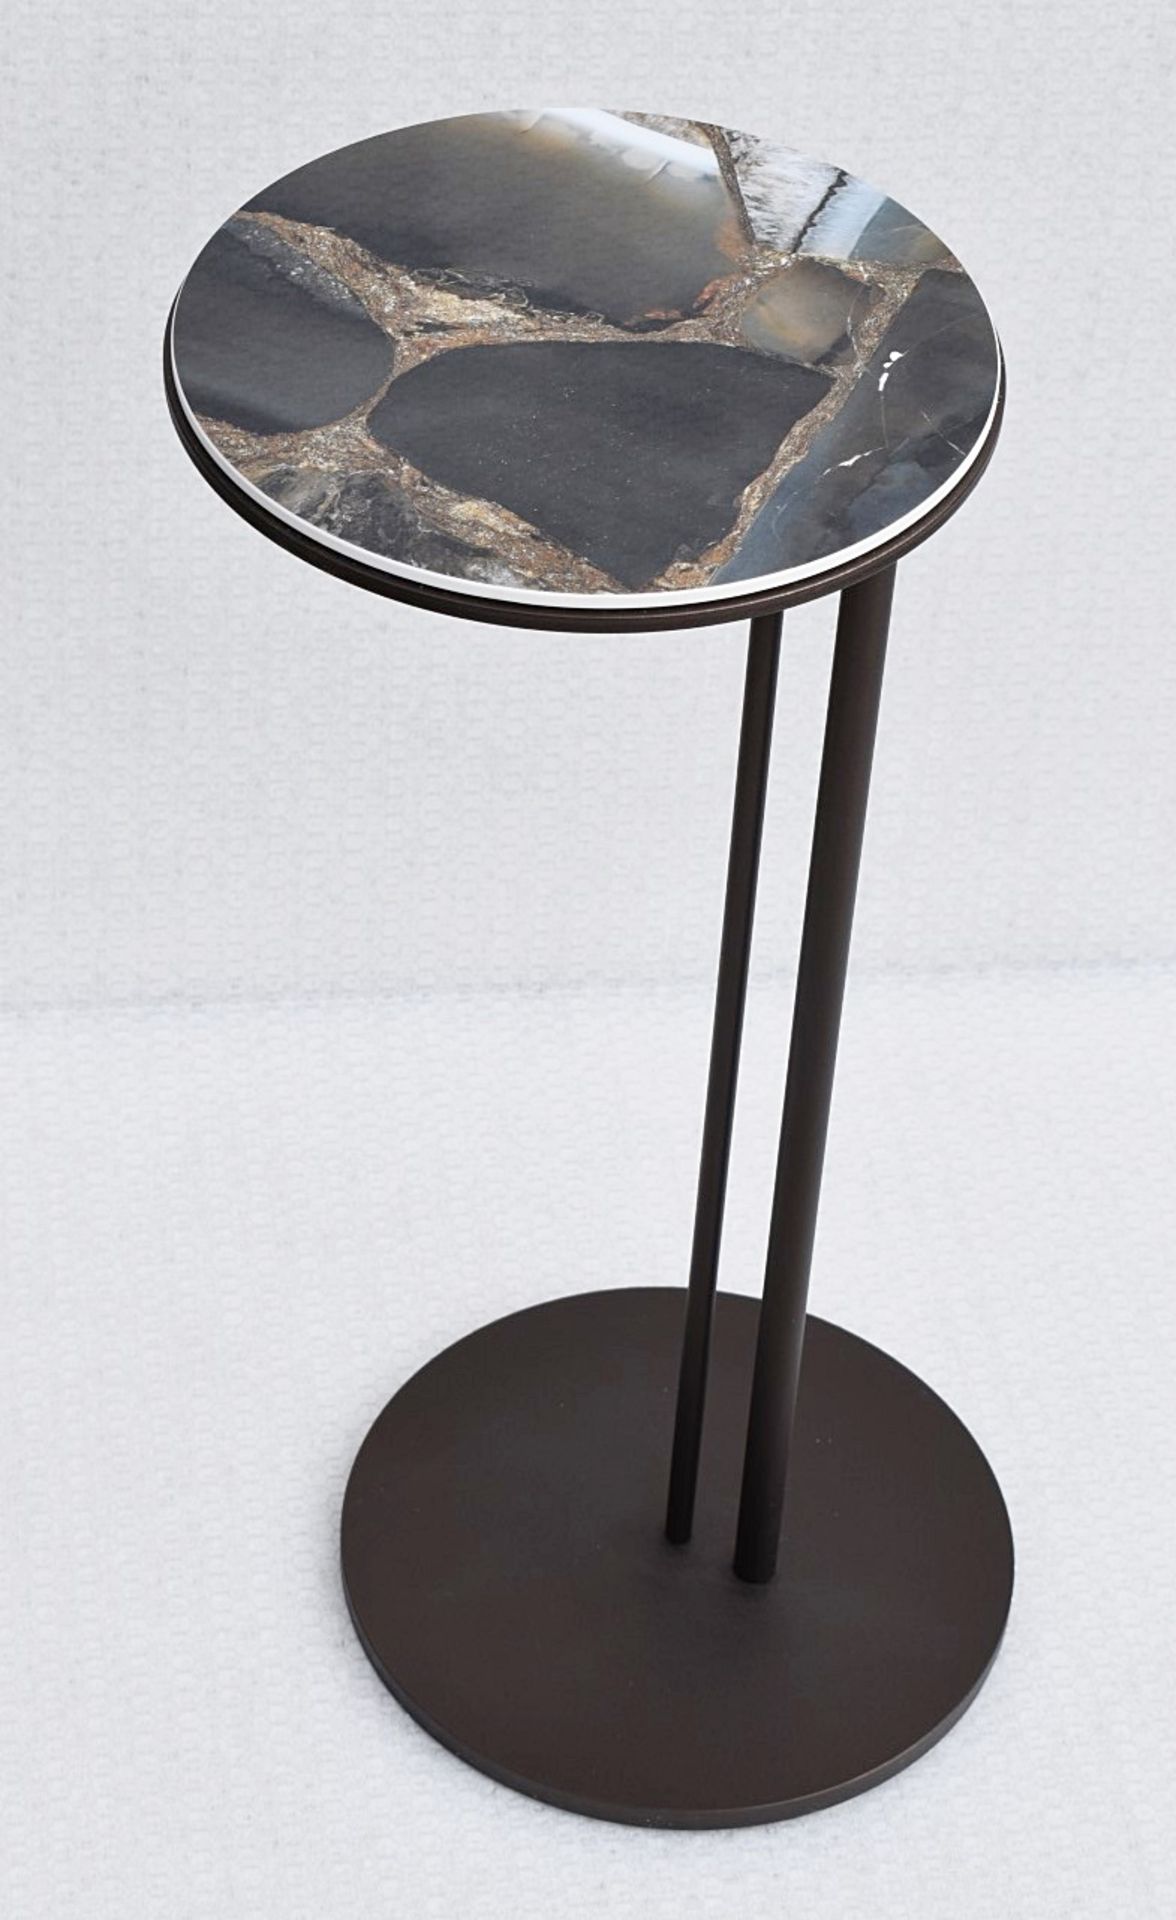 1 x CATTELAN ITALIA 'Sting' Italian Designer Side Table - Original Price £383.00 - Unused Boxed